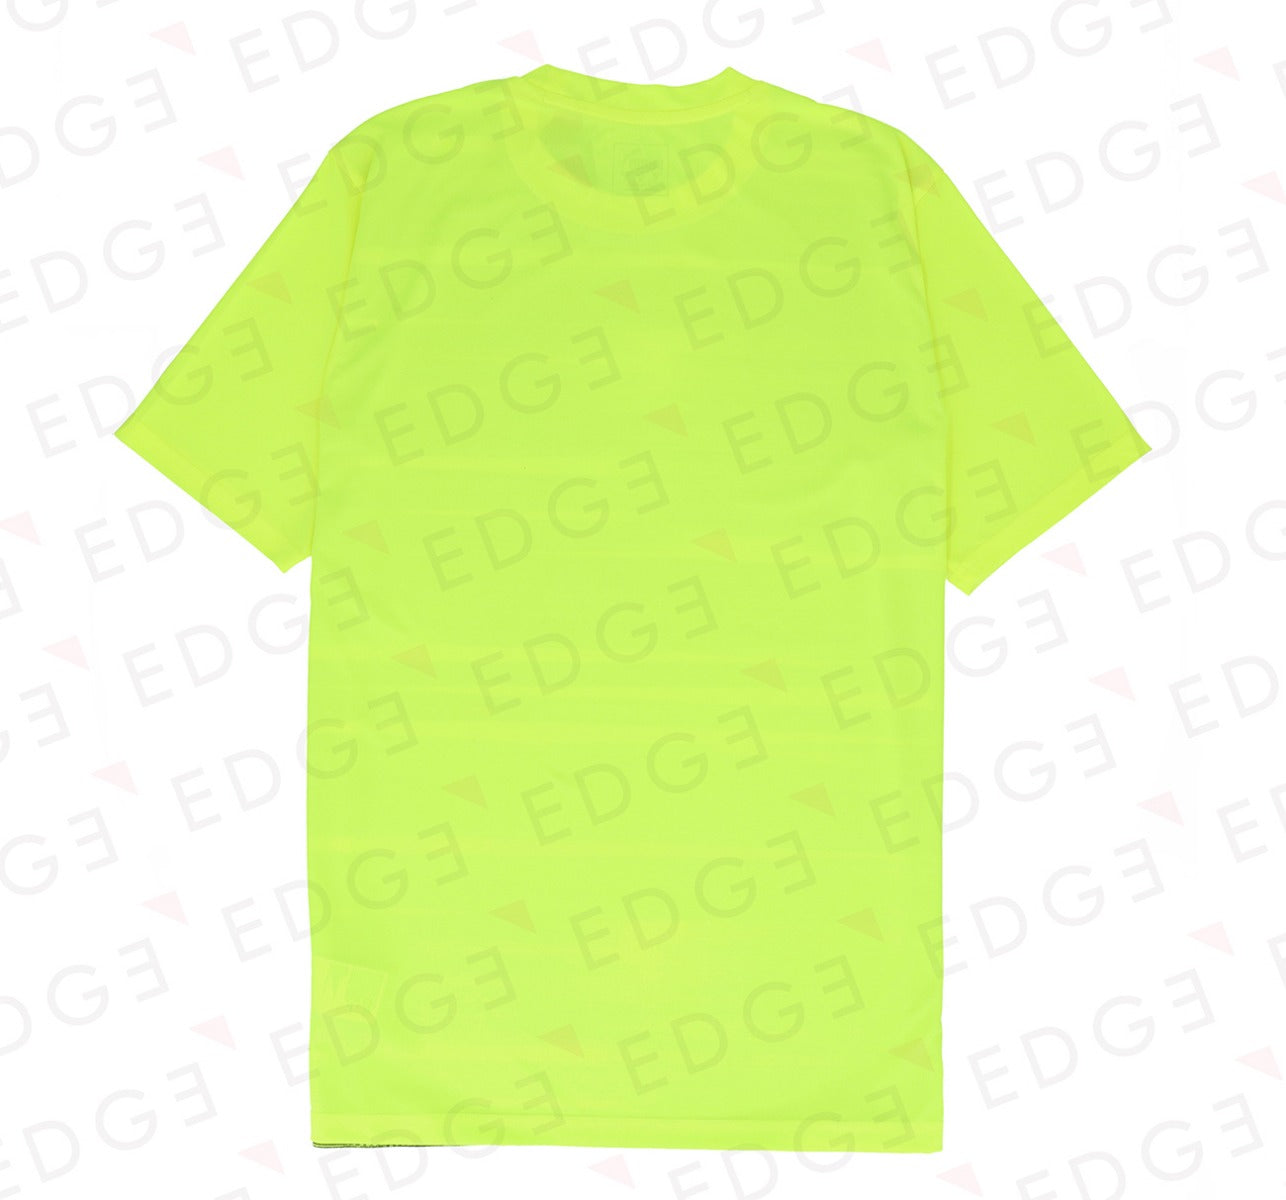 PUMA ftbINXT Graphic Shirt Core - Yellow alert-grey dawn - SKU-656428-04 - Men